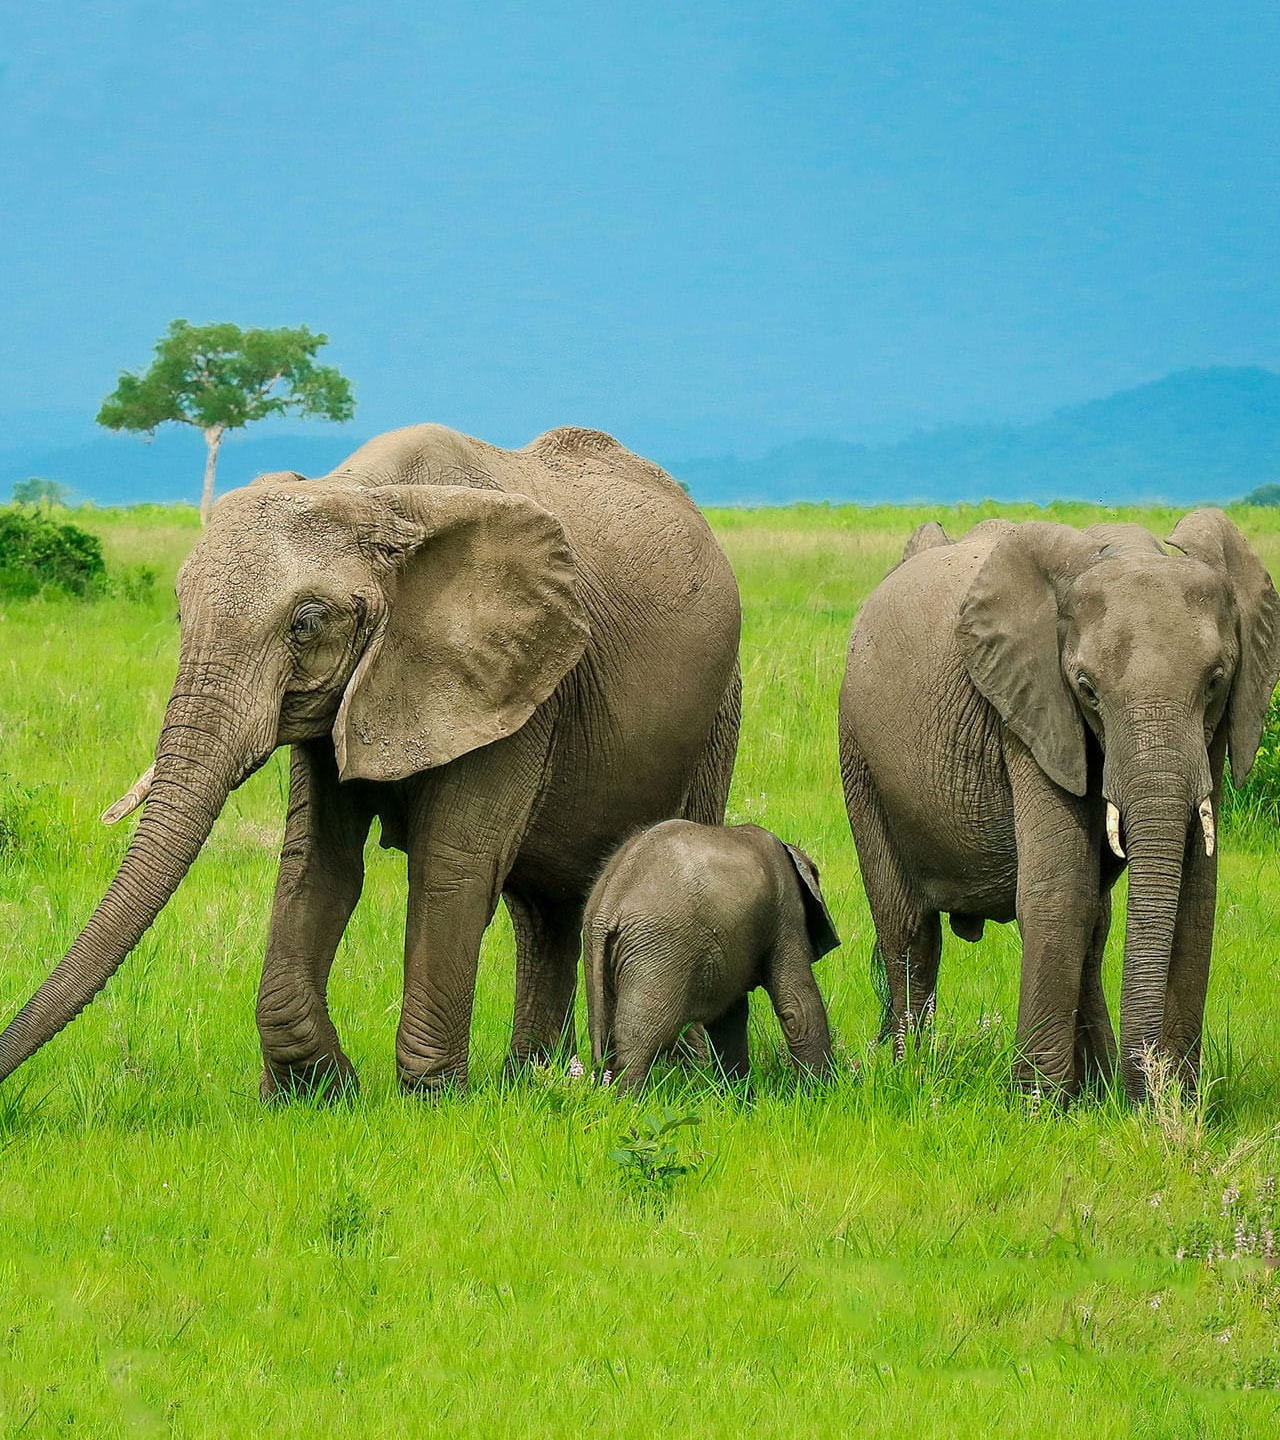 Elephants in Saadani National Park, Tanzania